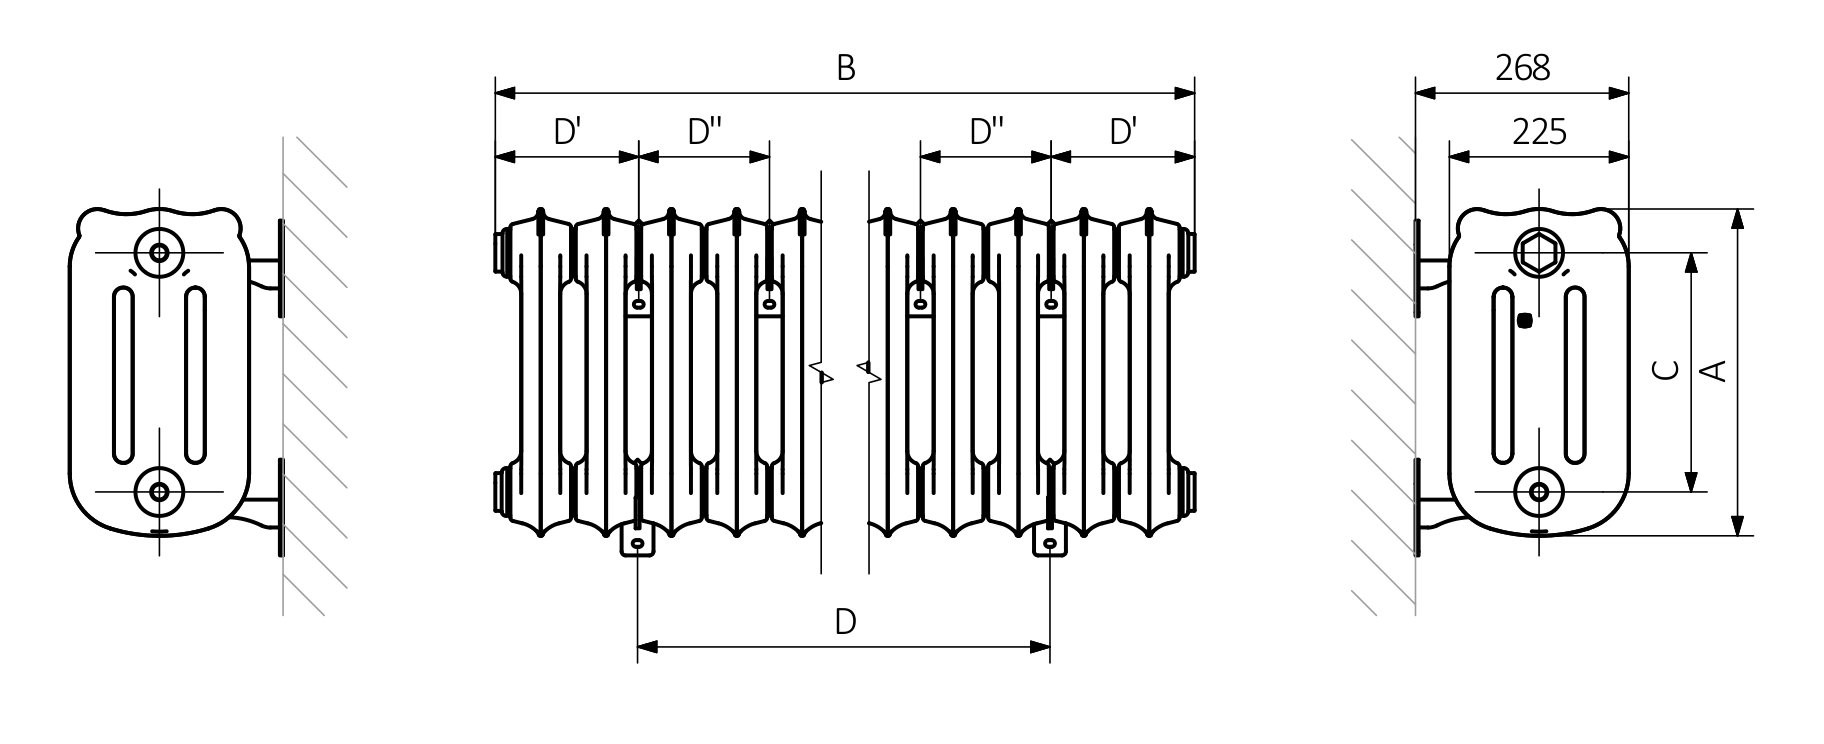 A - hauteur B - largeur C1-C5 - espacement des connexions D - distance entre les fixations à l'horizontale E - distance entre les dispositifs en F verticale - distance entre l'axe inférieur des fixations et le bord inférieur du collecteur
